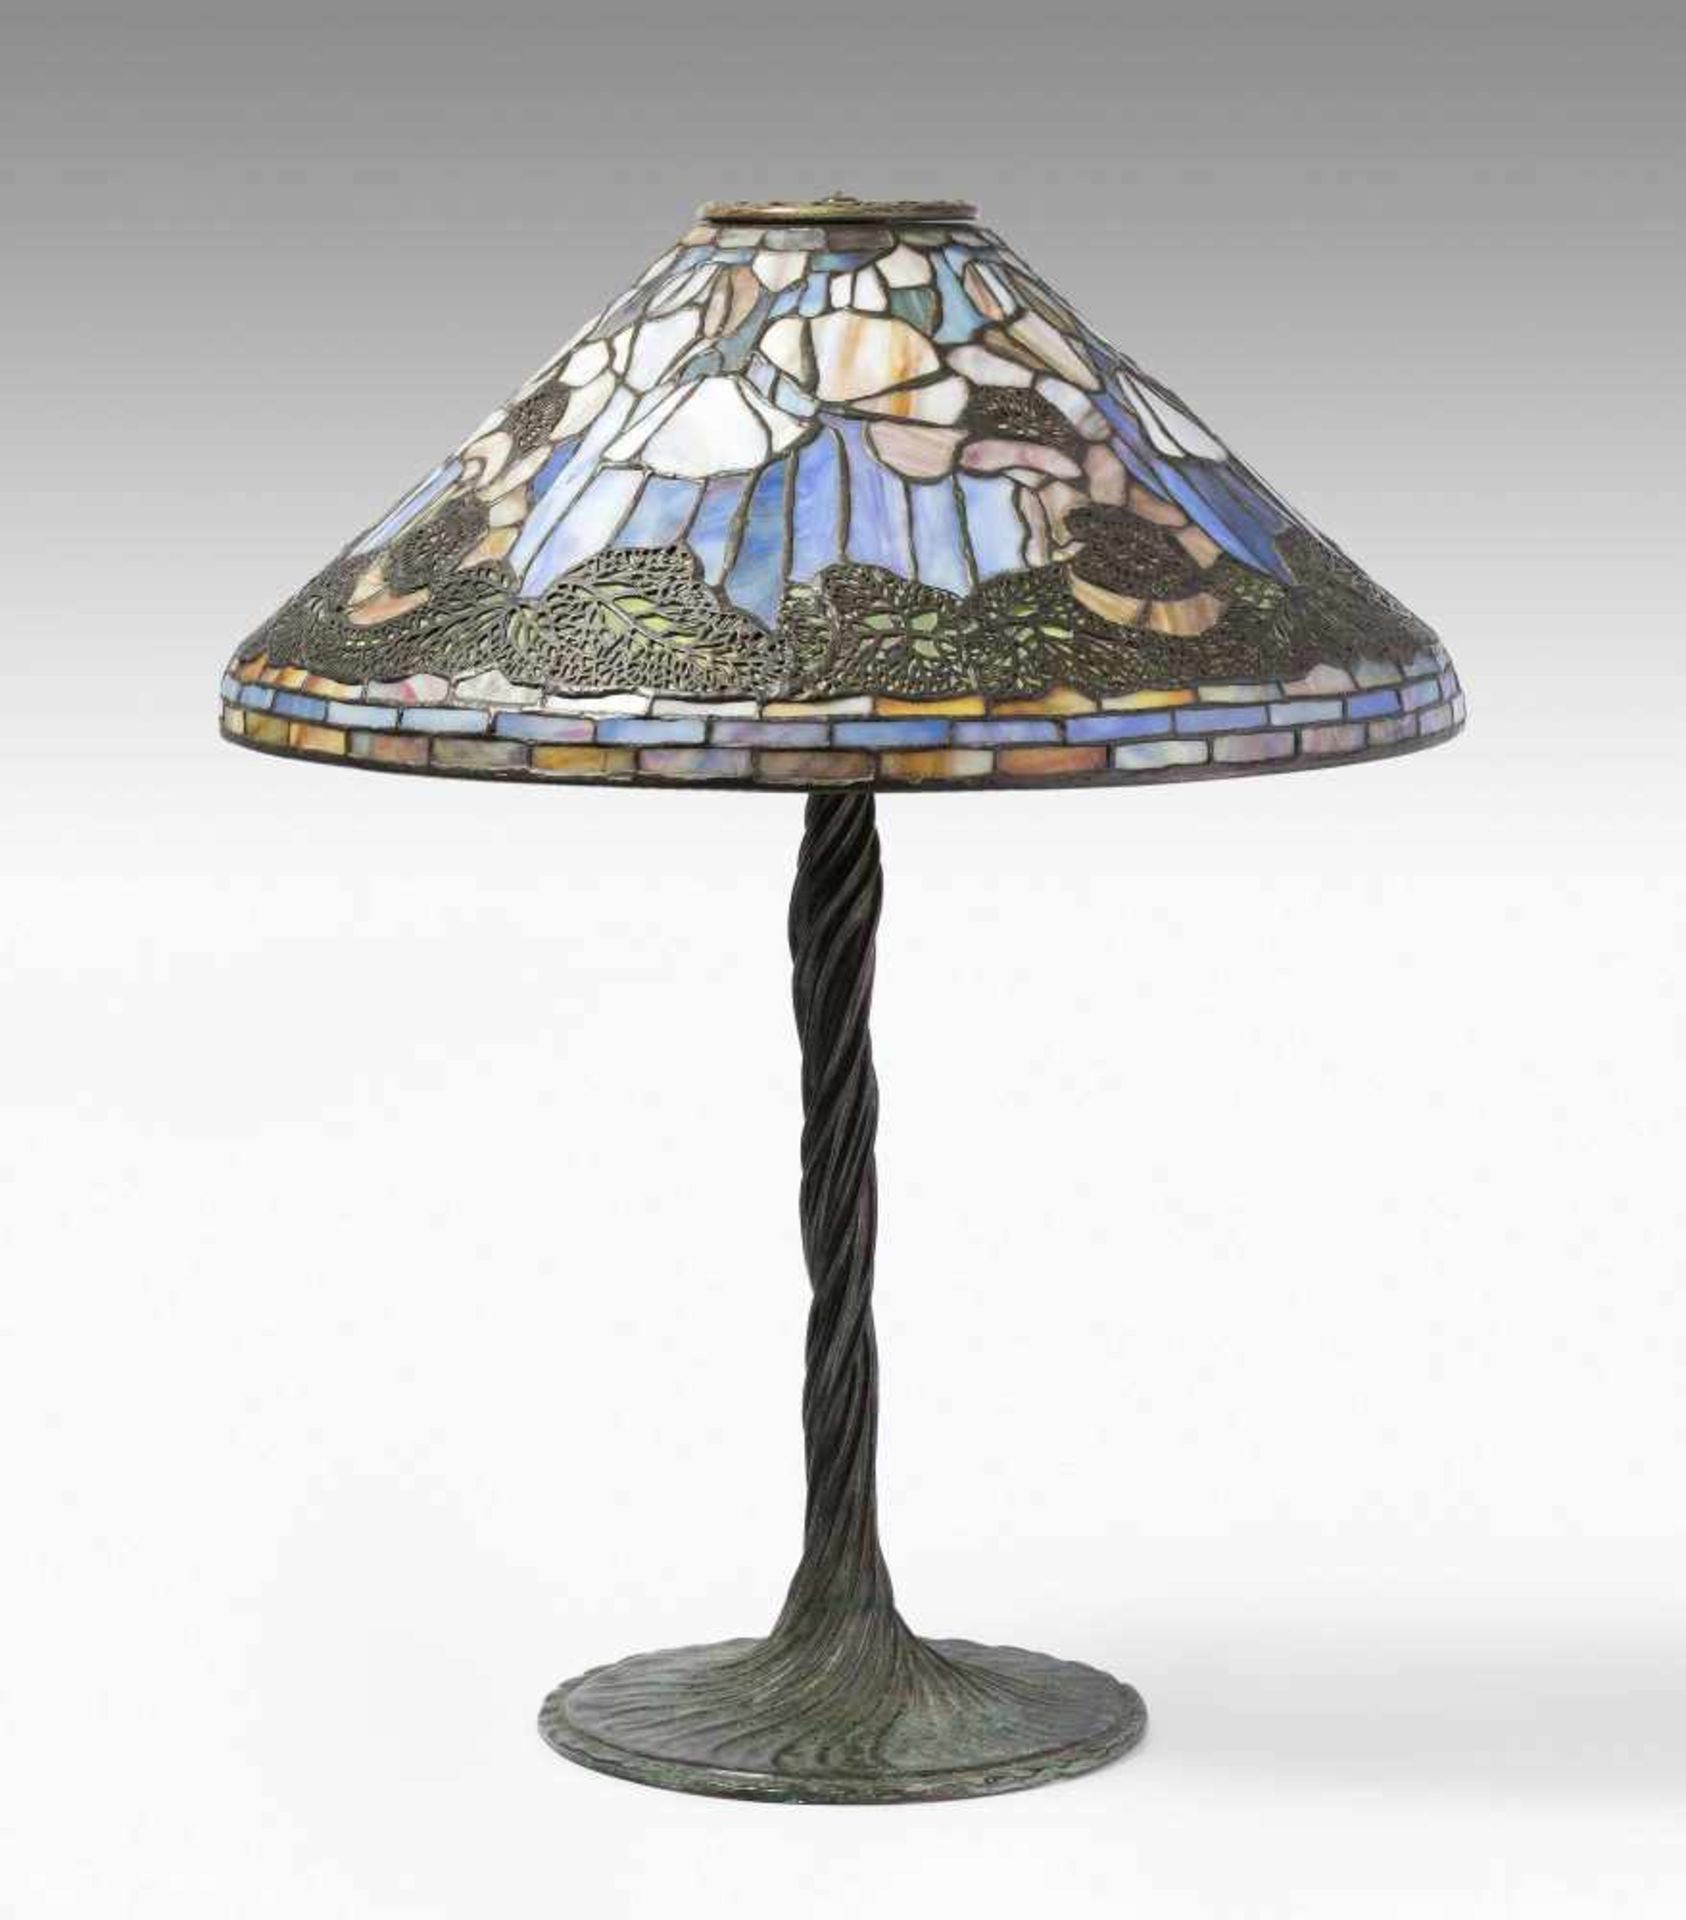 Tiffany Studios New YorkTischlampe "Poppy". Schirm aus "leaded Glass", weisser Mohn mit Blättern,